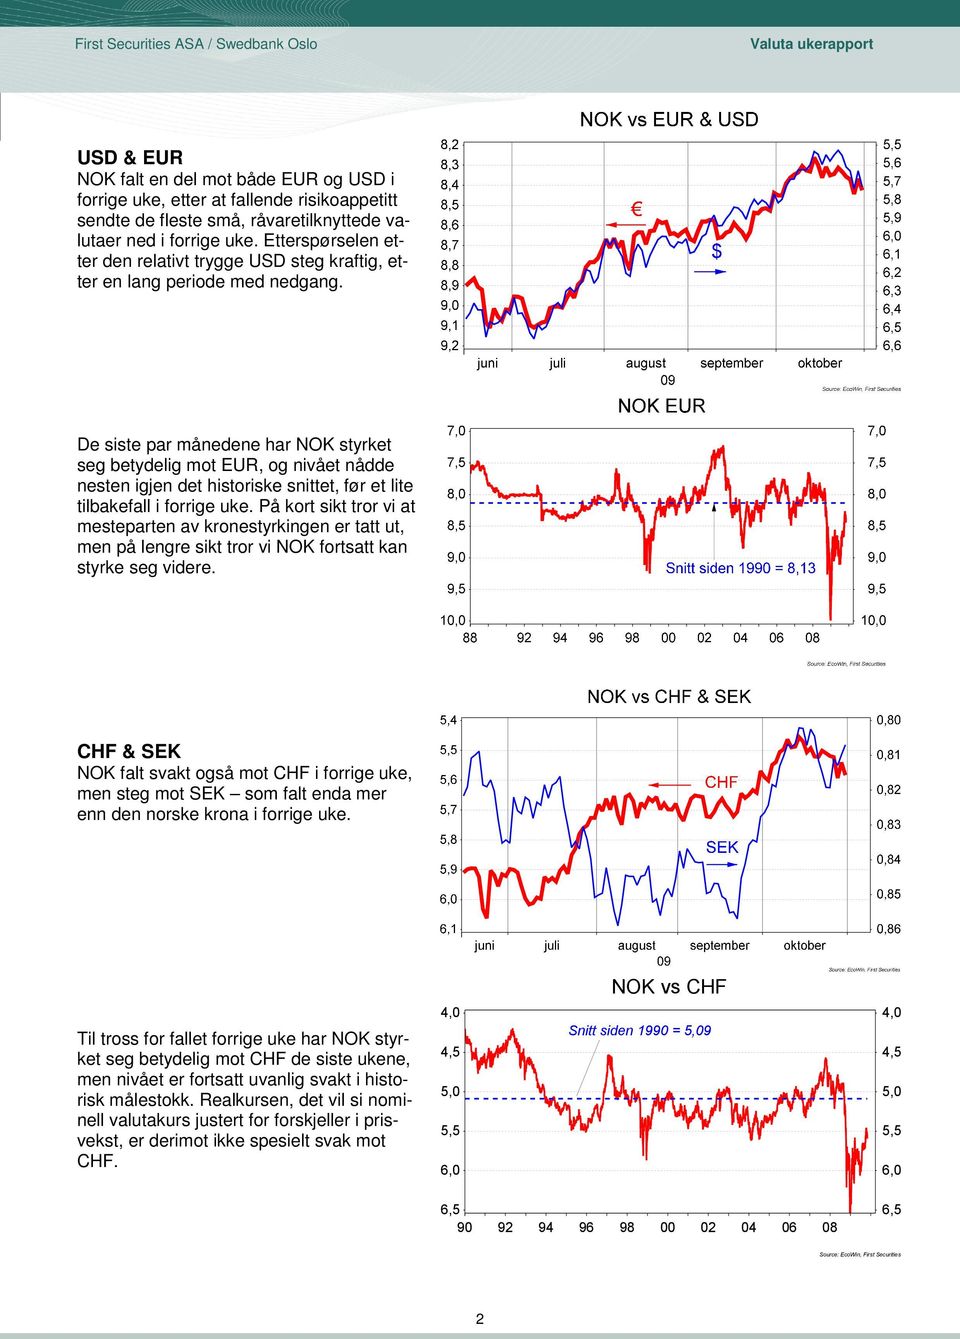 De siste par månedene har NOK styrket seg betydelig mot EUR, og nivået nådde nesten igjen det historiske snittet, før et lite tilbakefall i forrige uke.